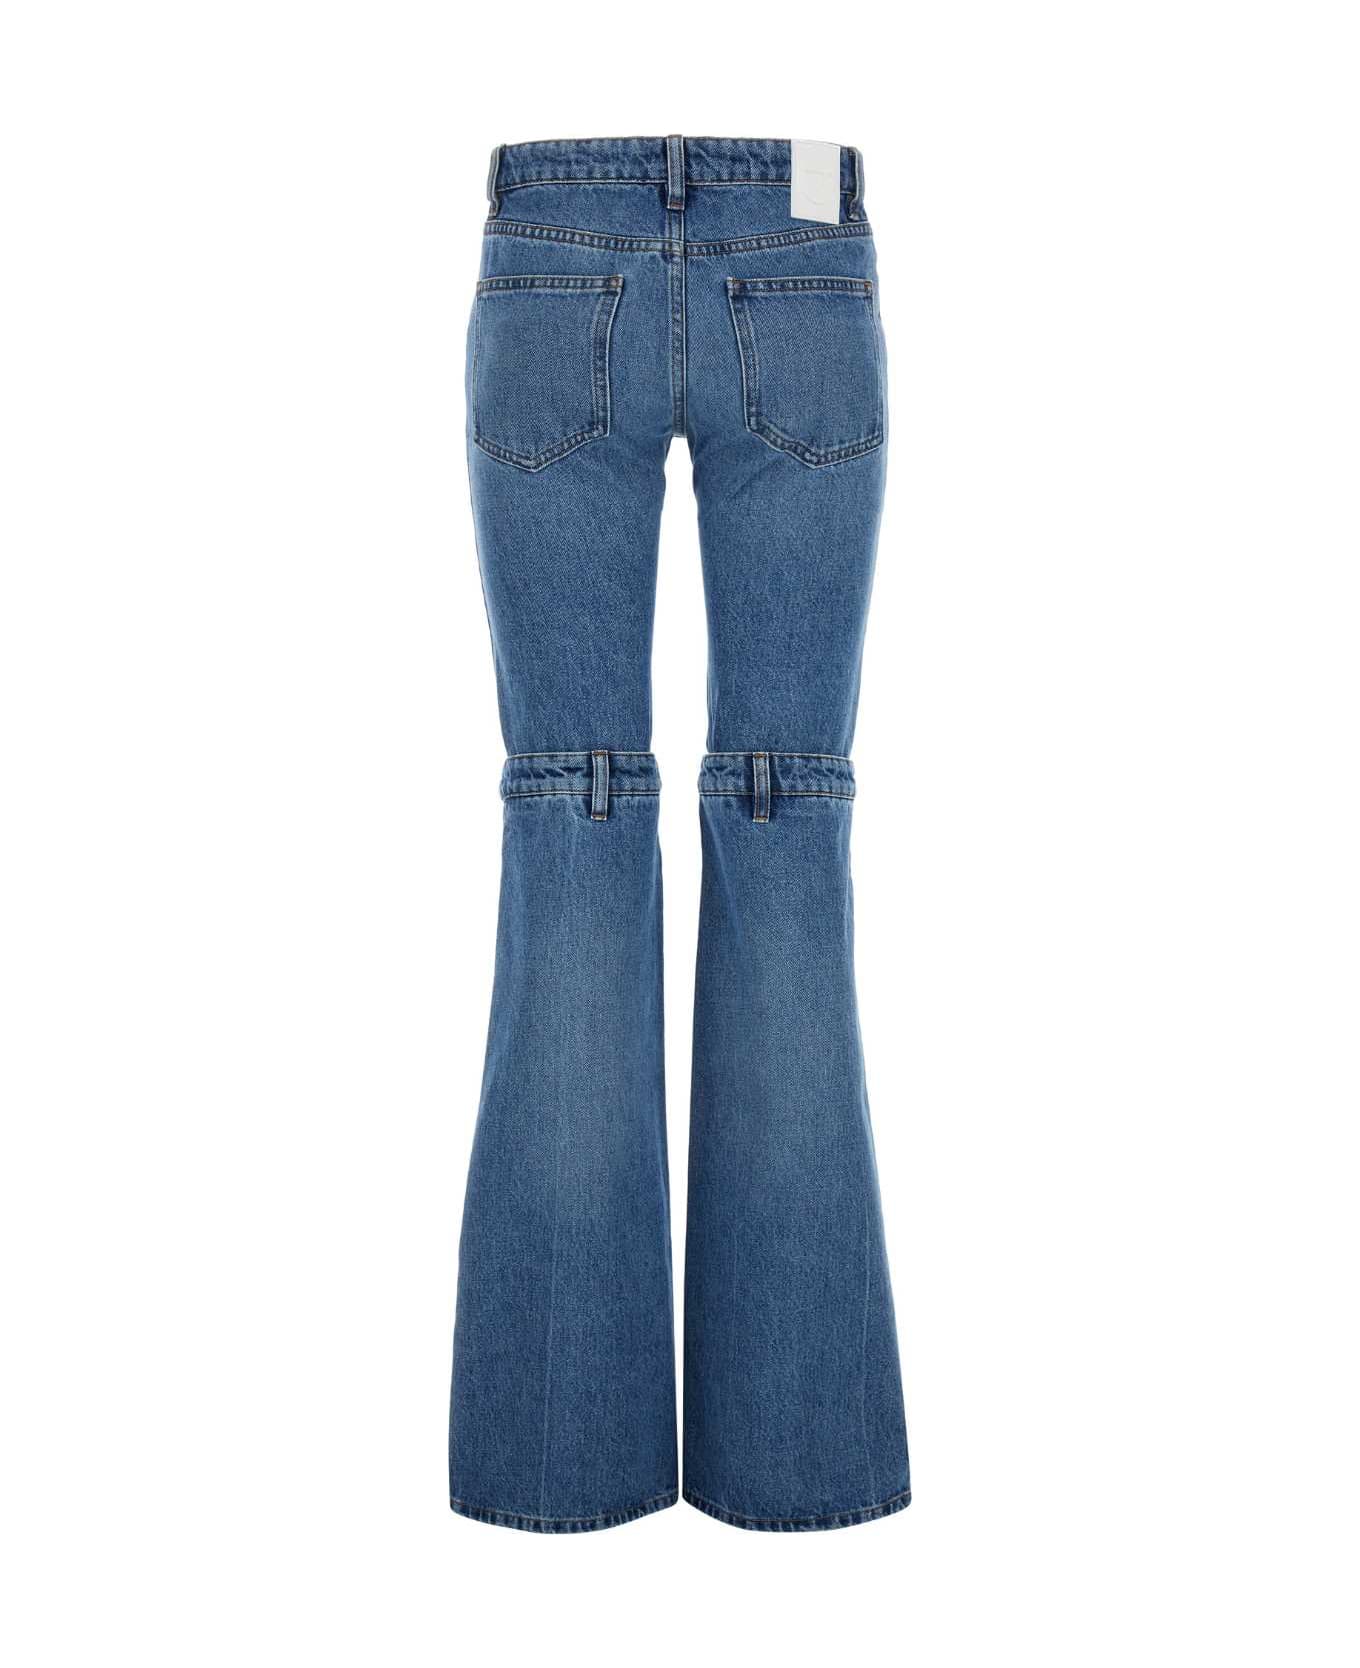 Coperni Denim Jeans - WASHEDBLUE